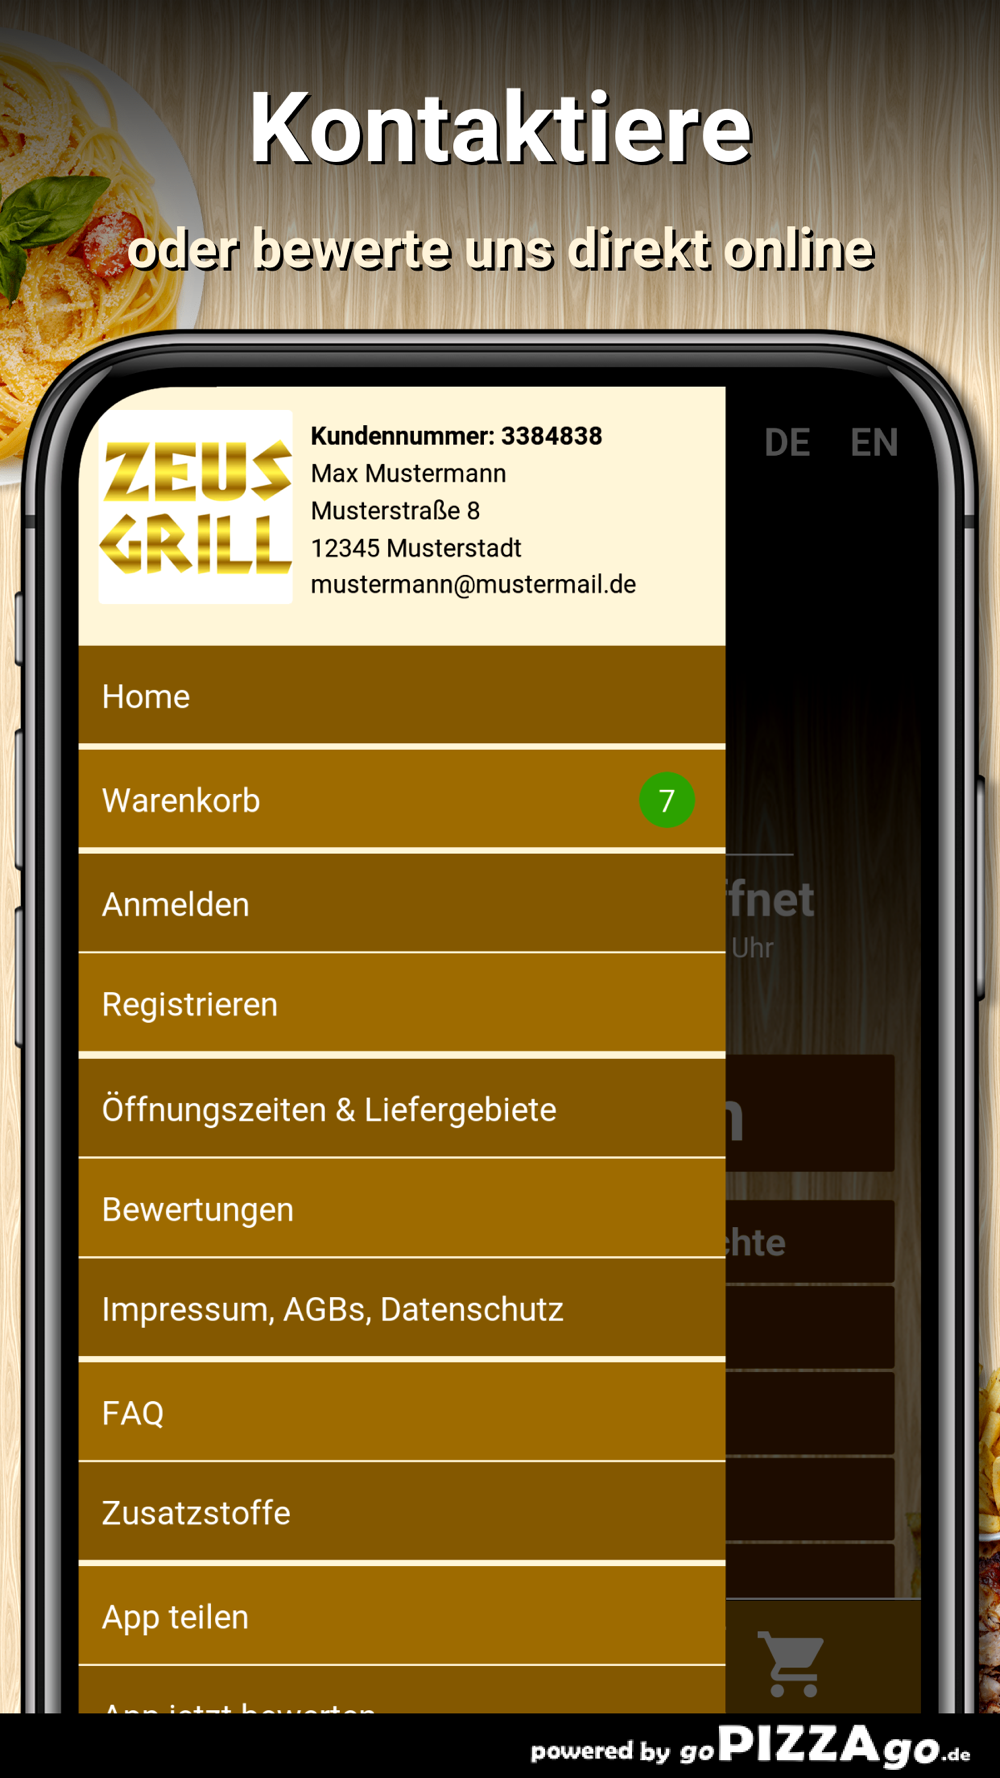 Zeus Grill Dortmund Free Download App for iPhone - STEPrimo.com